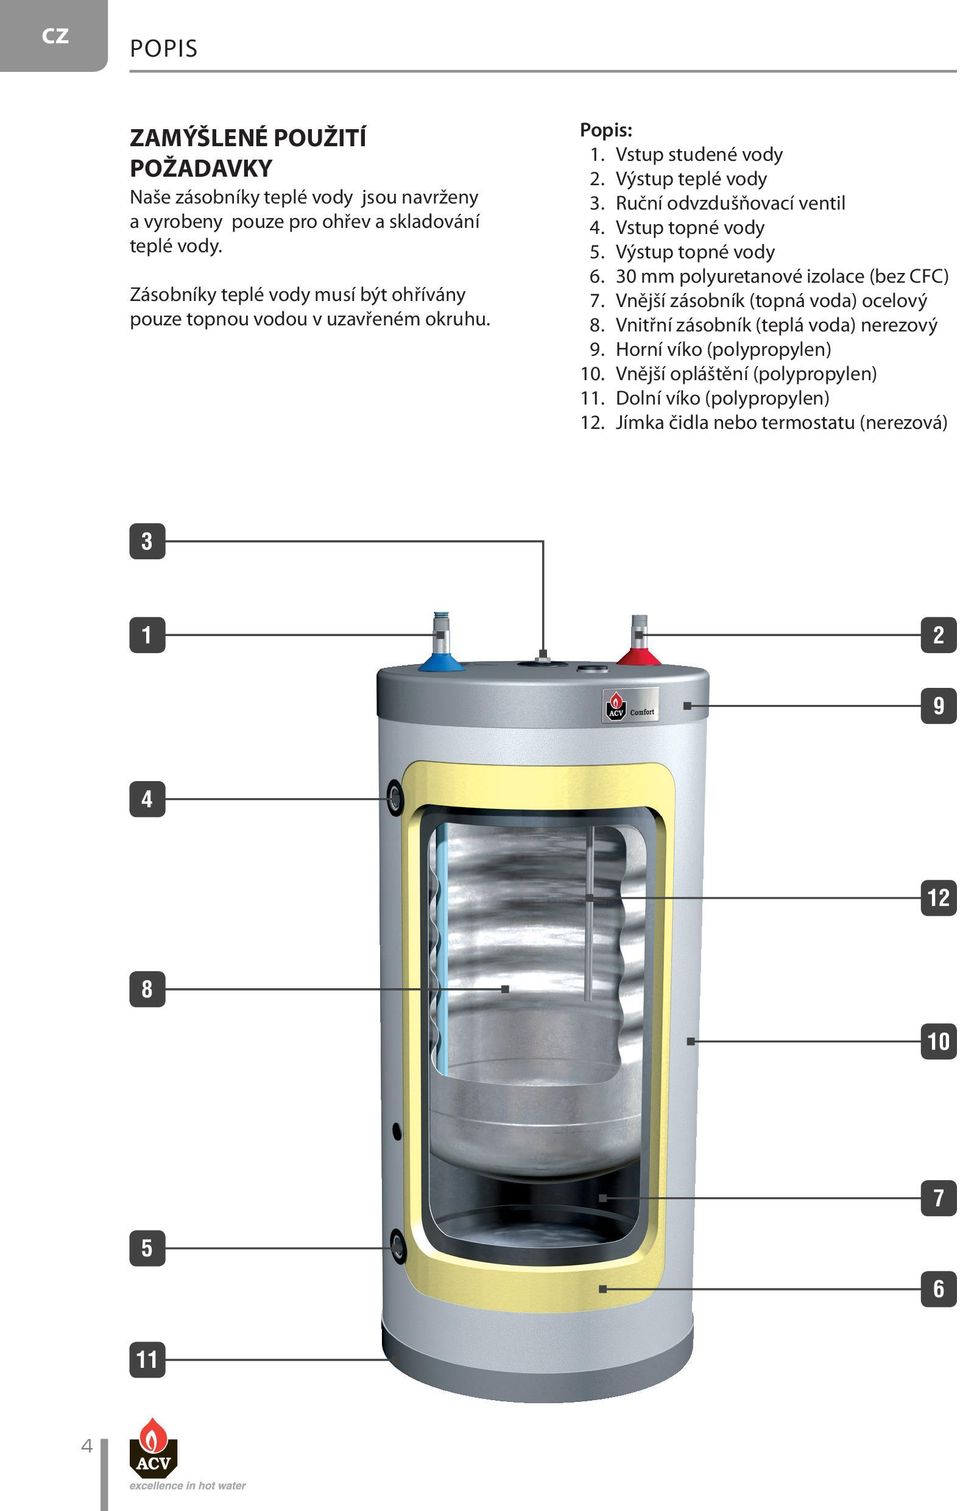 Ruční odvzdušňovací ventil 4. Vstup topné vody 5. Výstup topné vody 6. 0 mm polyuretanové izolace (bez CFC) 7. Vnější zásobník (topná voda) ocelový 8.